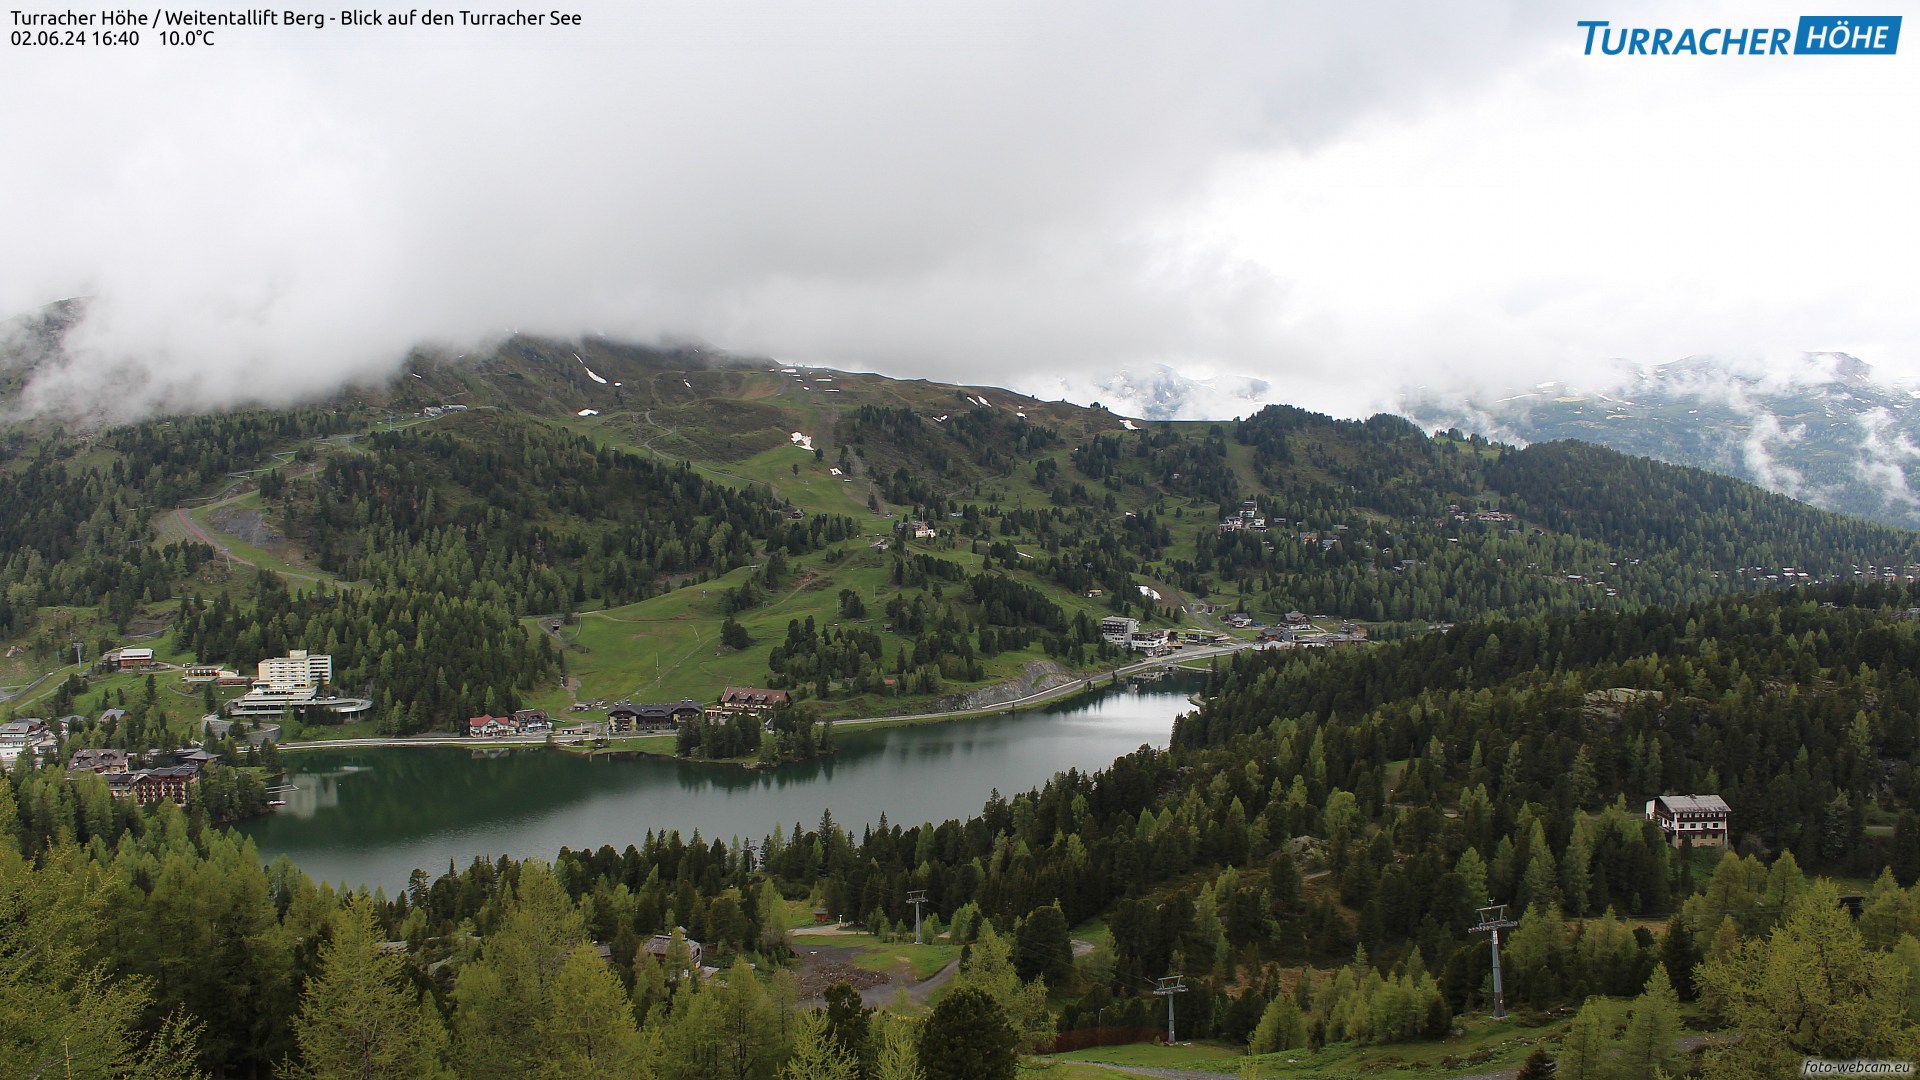 Turracher Höhe / Weitentallift Berg 1.970 m - Blick auf den Turracher See